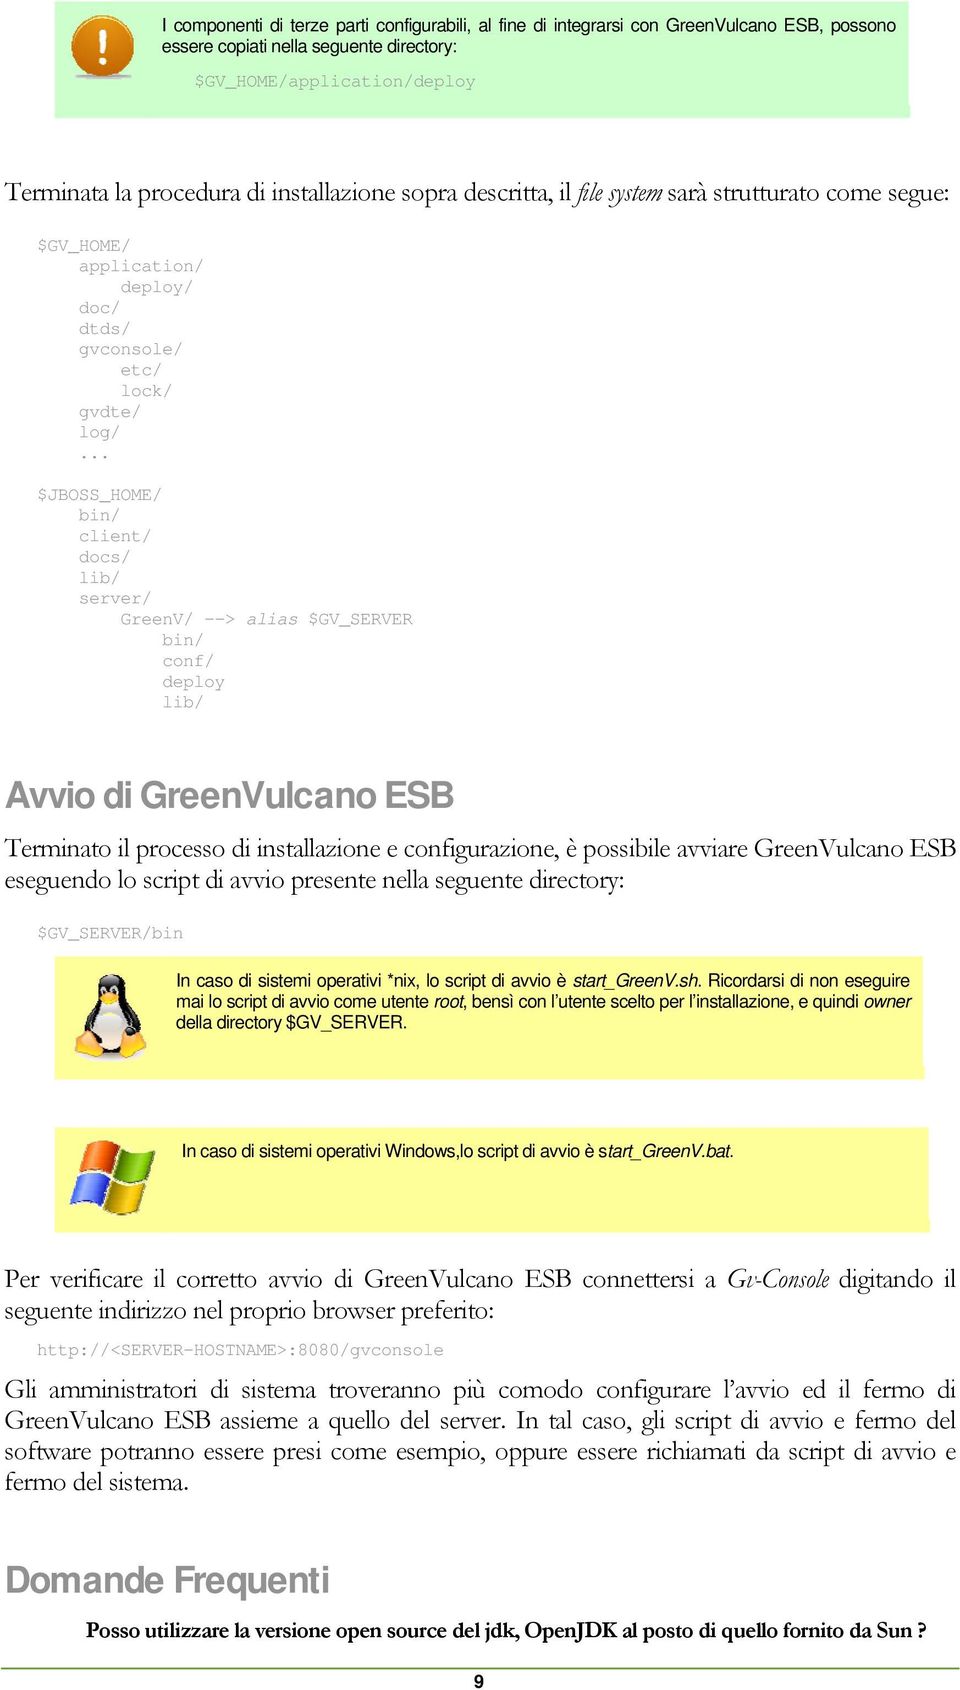 .. $JBOSS_HOME/ bin/ client/ docs/ lib/ server/ GreenV/ --> alias $GV_SERVER bin/ conf/ deploy lib/ Avvio di GreenVulcano ESB Terminato il processo di installazione e configurazione, è possibile